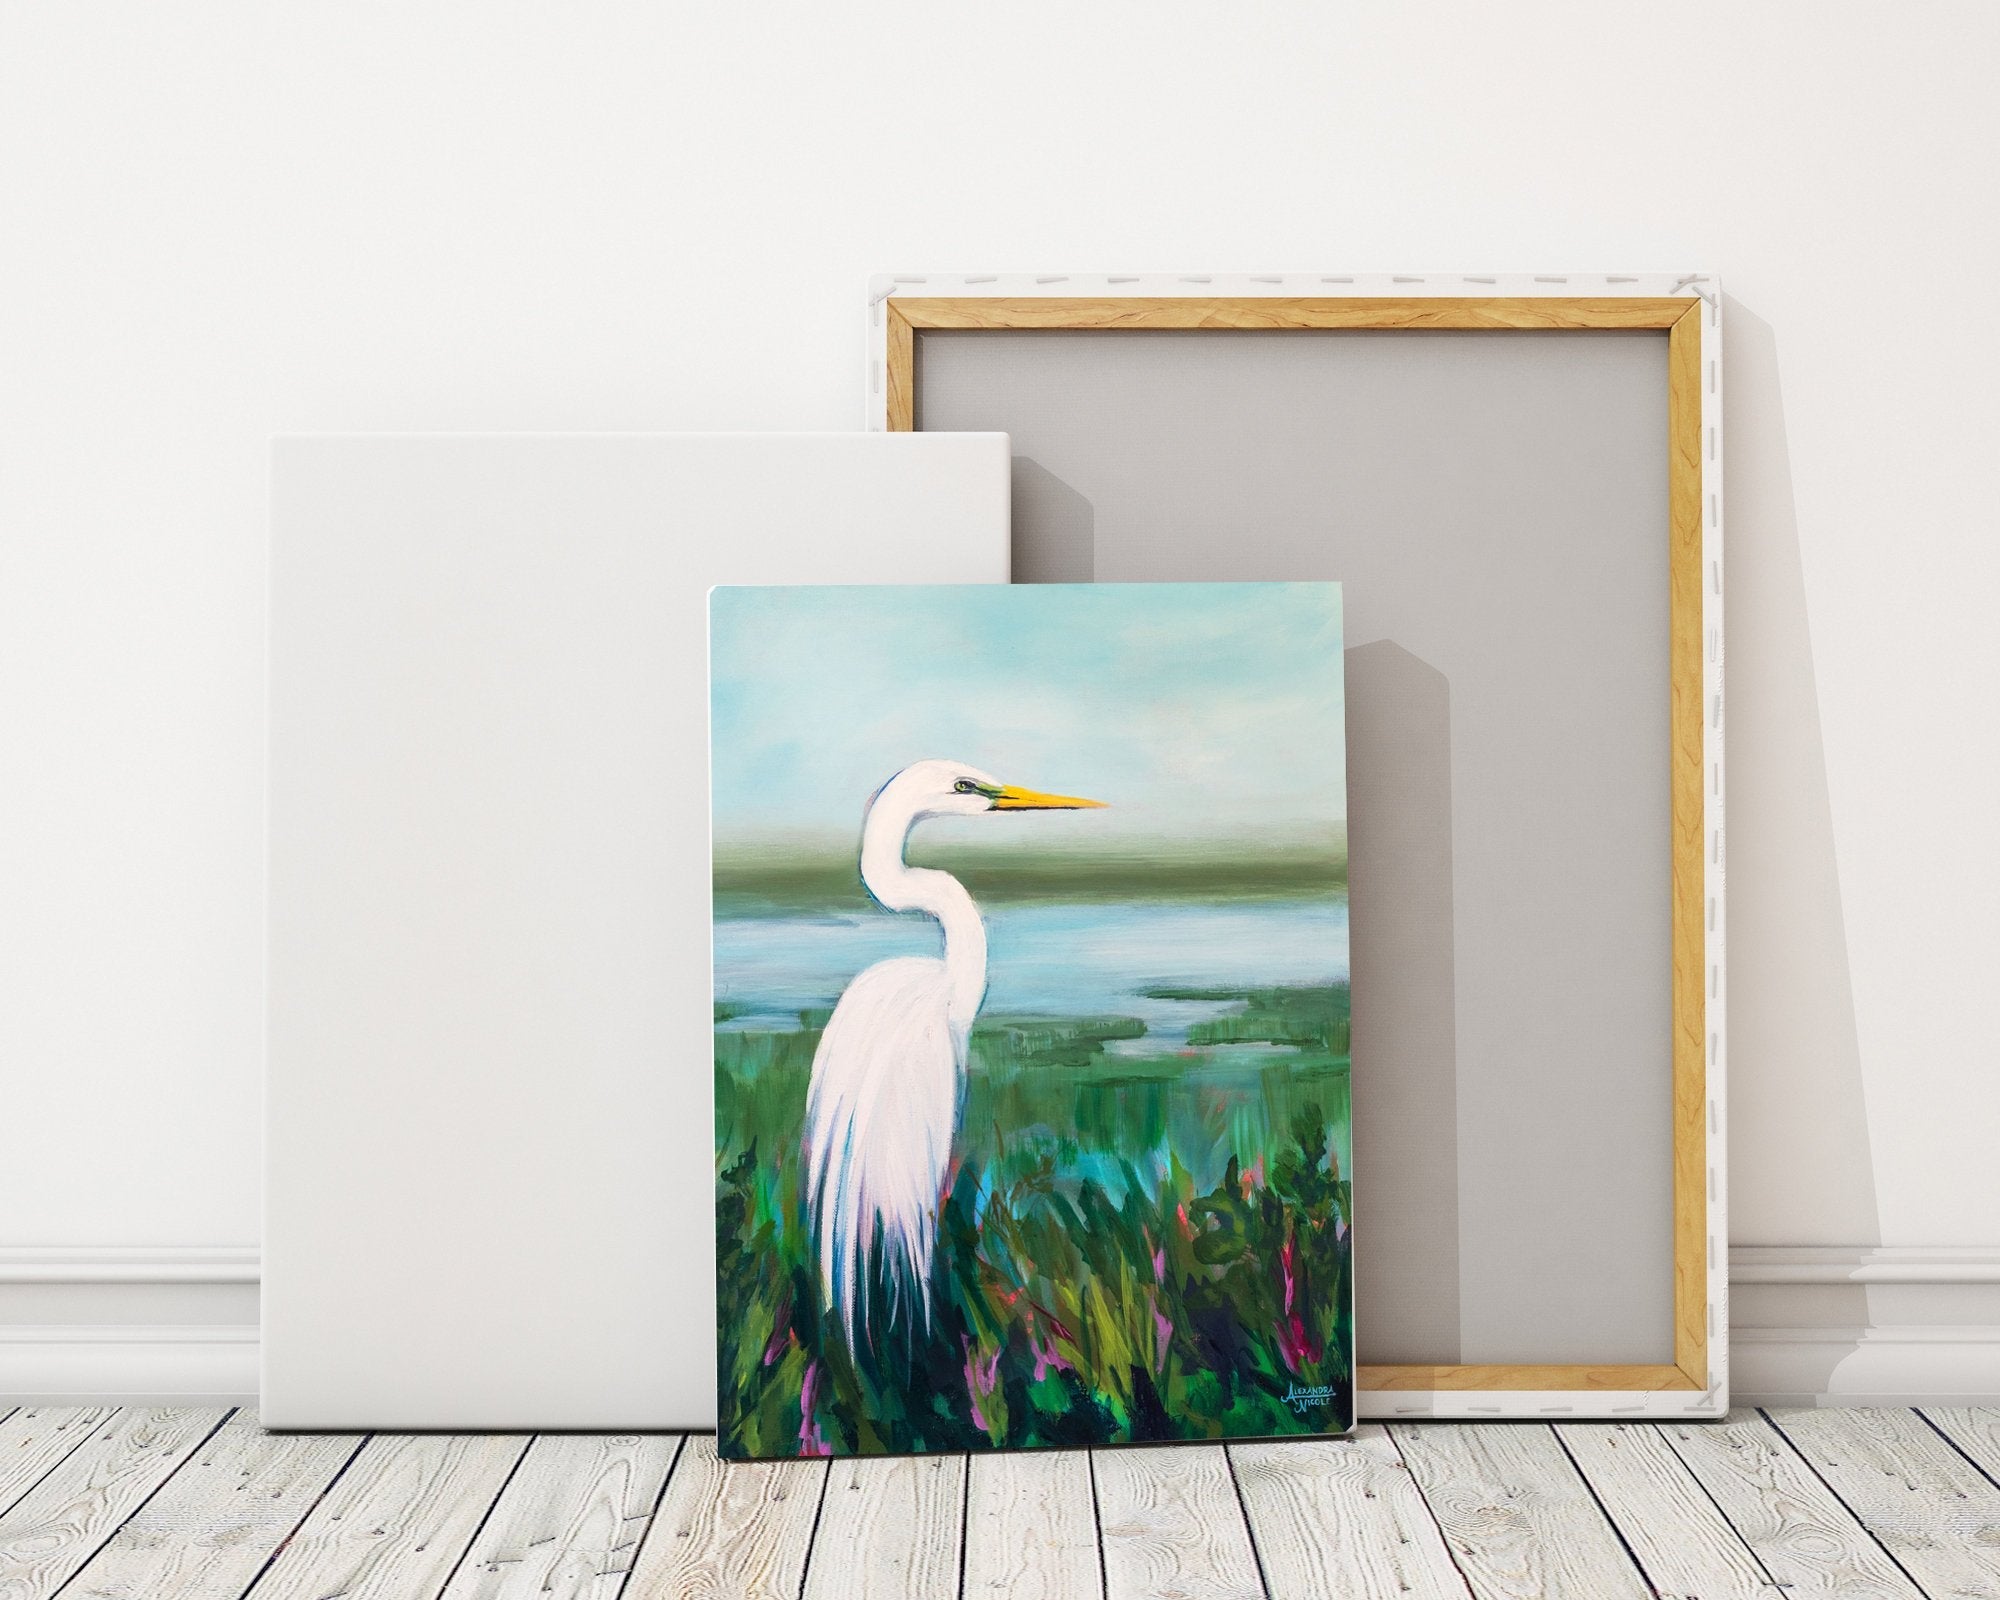 Egret Looking Over The Marsh - ArtByAlexandraNicole